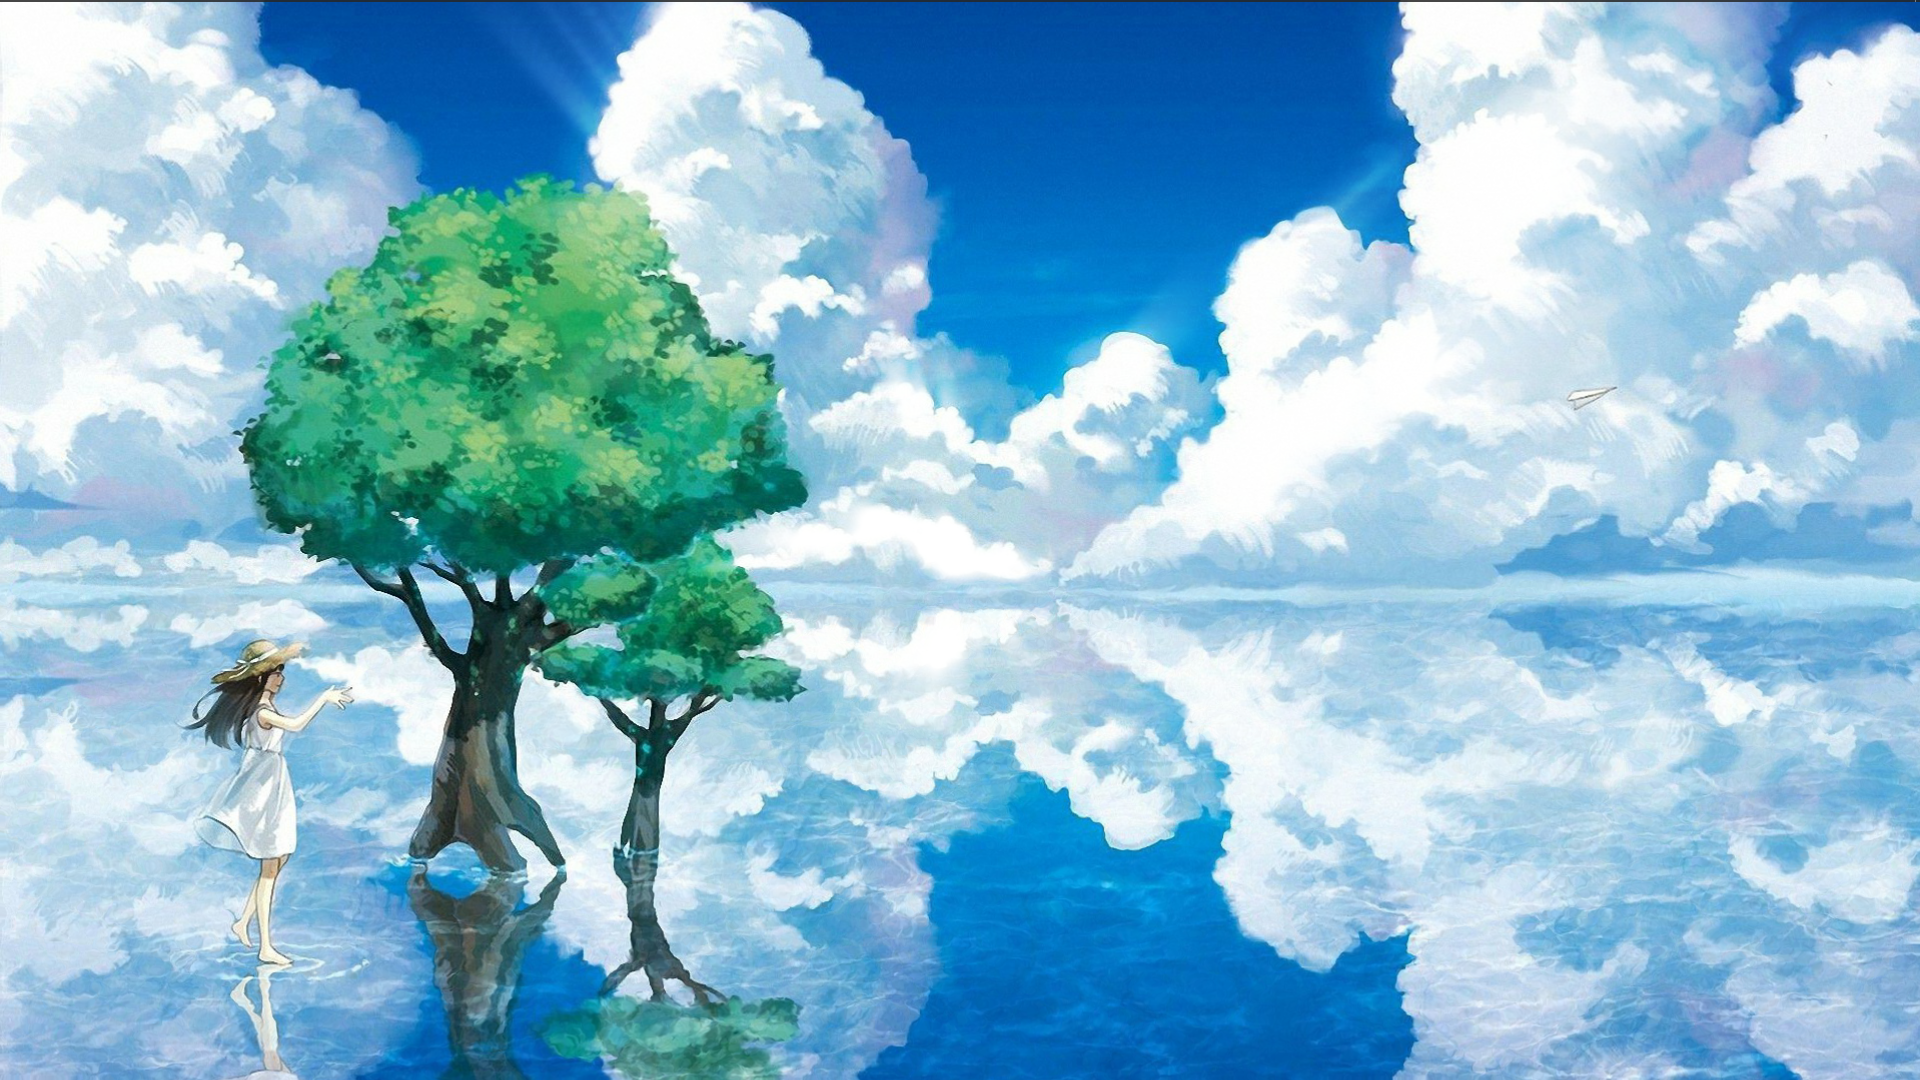 anime water floor